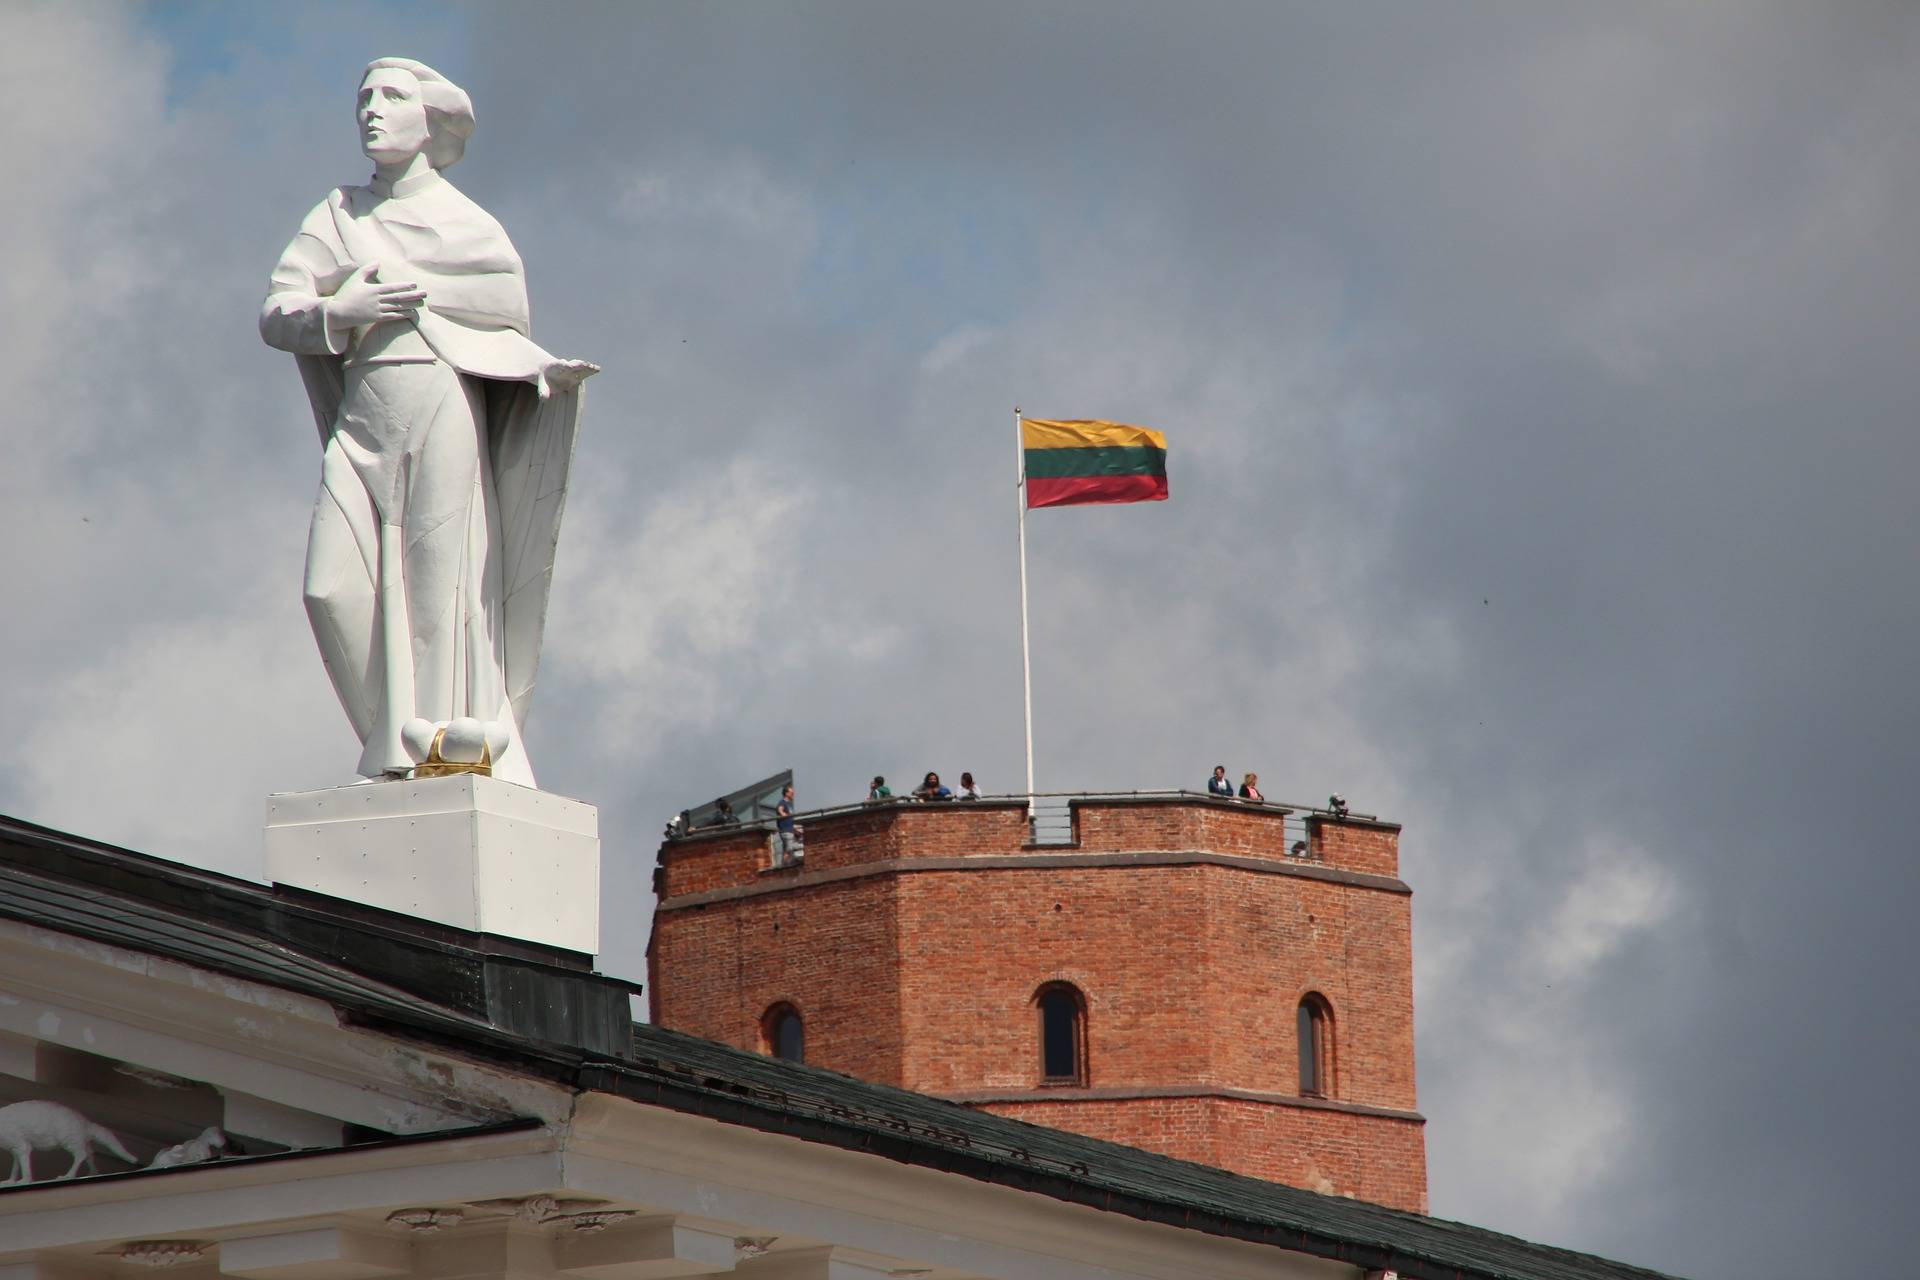 Литва уведомила Белоруссию о прекращении взаимодействия по пограничному движению